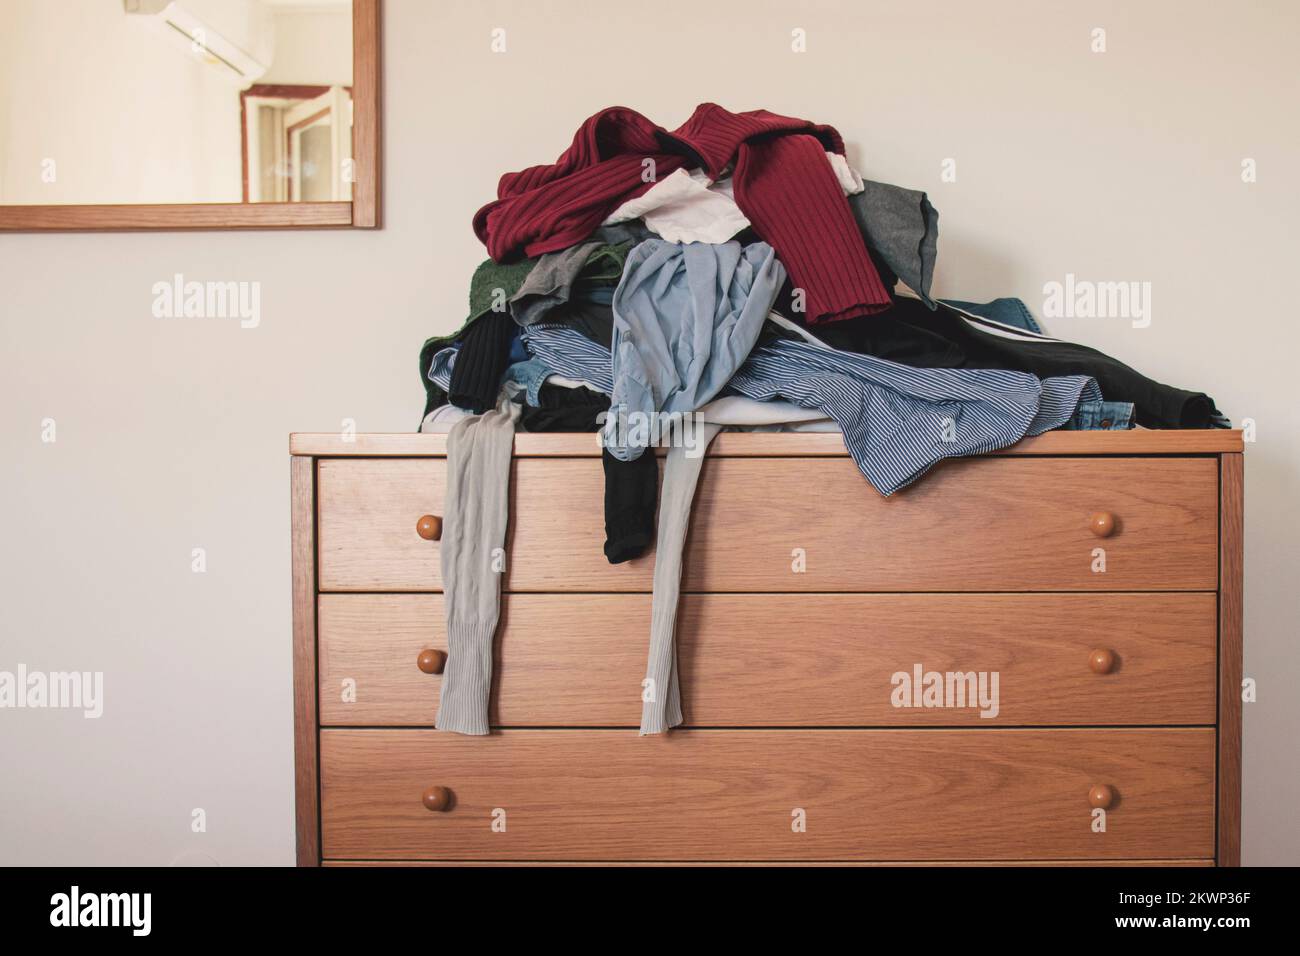 Pile de vêtements dépliés sur un pour le linge sur un tiroir. Concept de minimalisme, de mess et de nettoyage de garde-robe. Banque D'Images